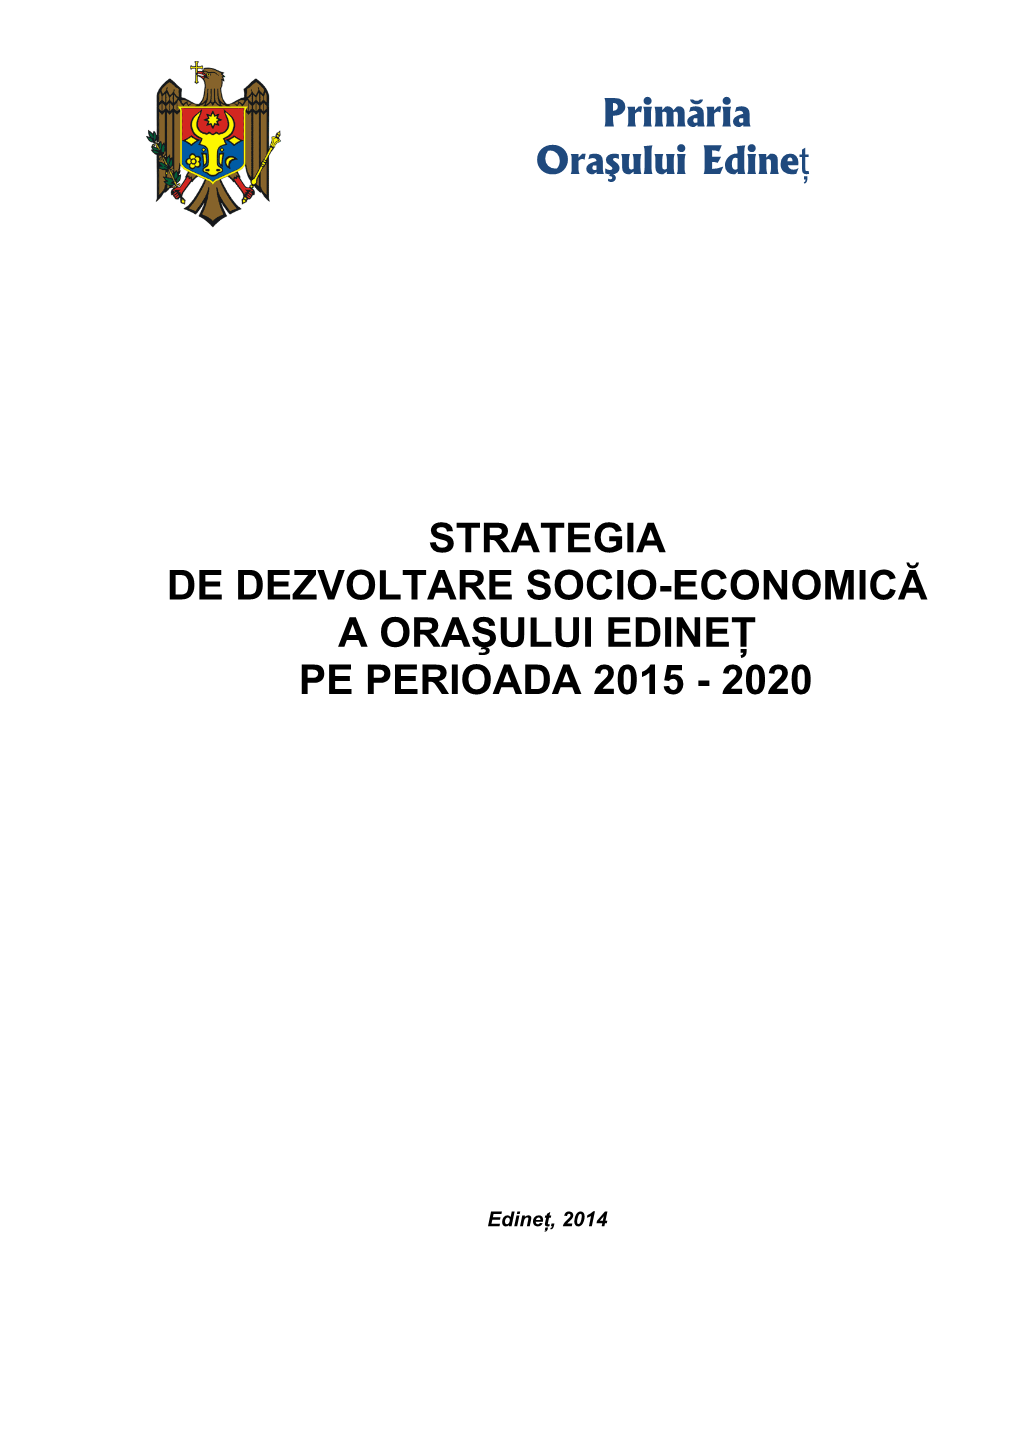 Strategia De Dezvoltare Socio-Economică a Oraşului Edineț Pe Perioada 2015 - 2020